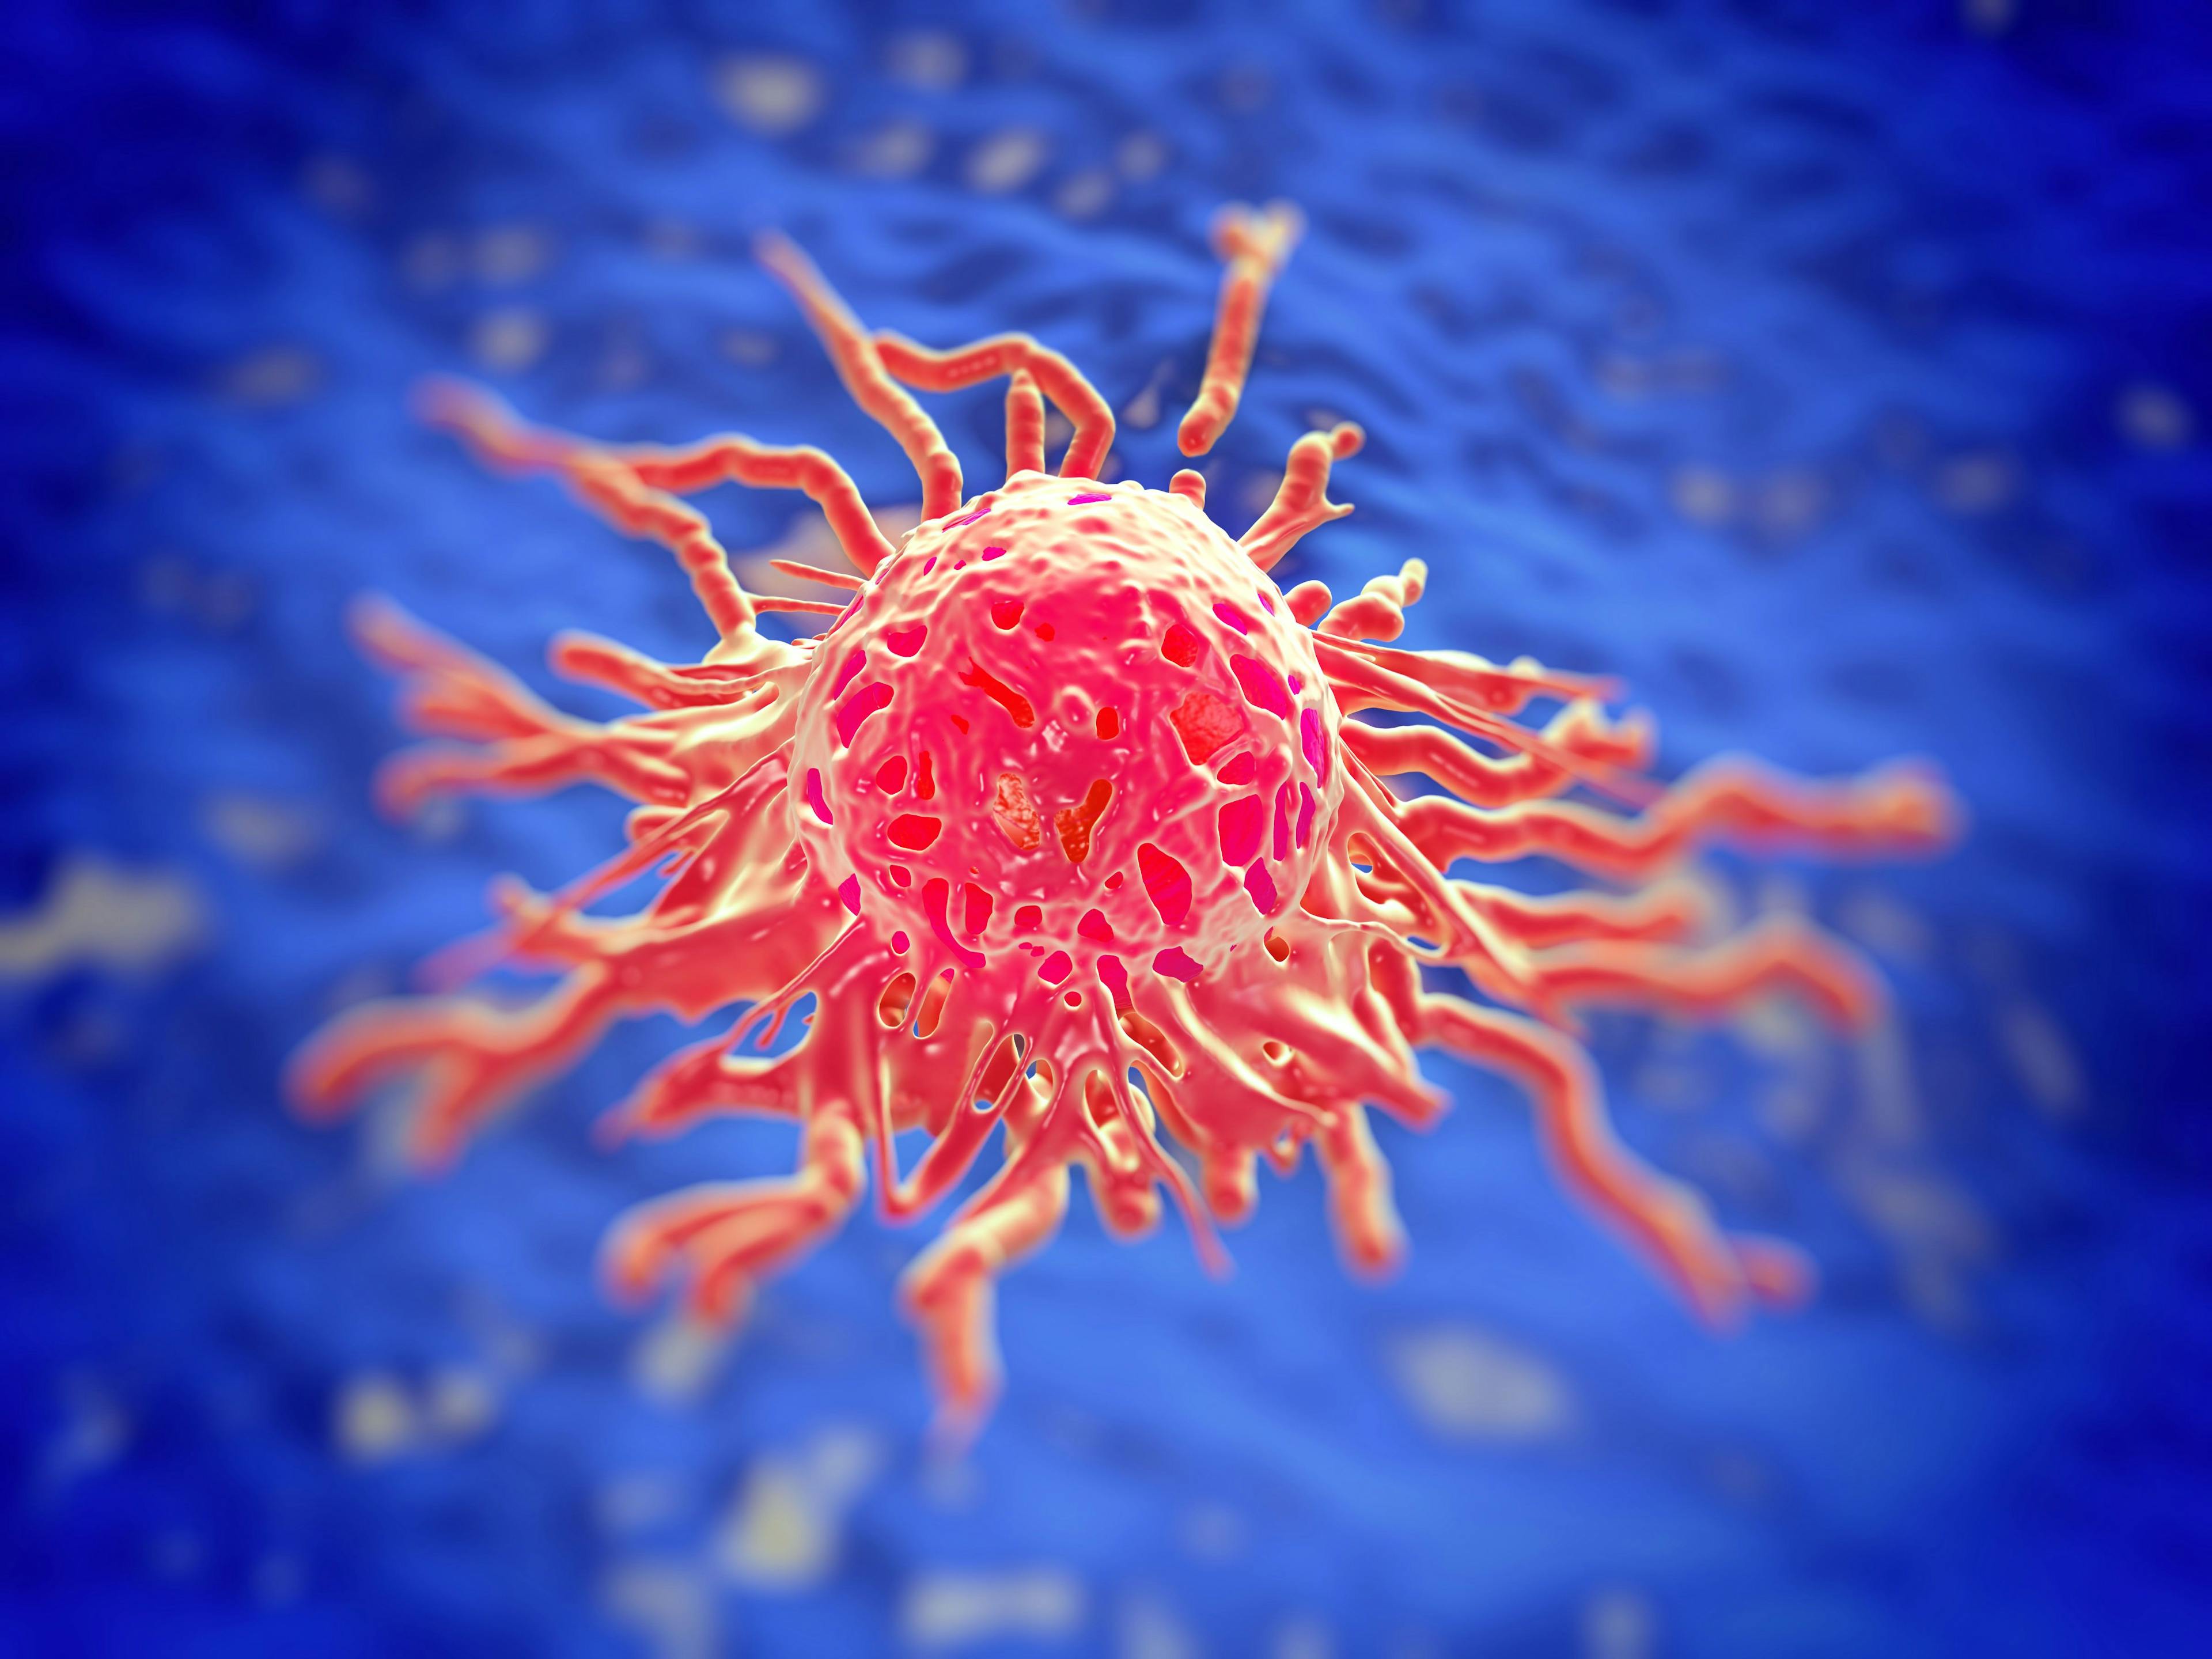 3D illustration of cervical cancer cell: ©PRB ARTS - stock.adobe.com